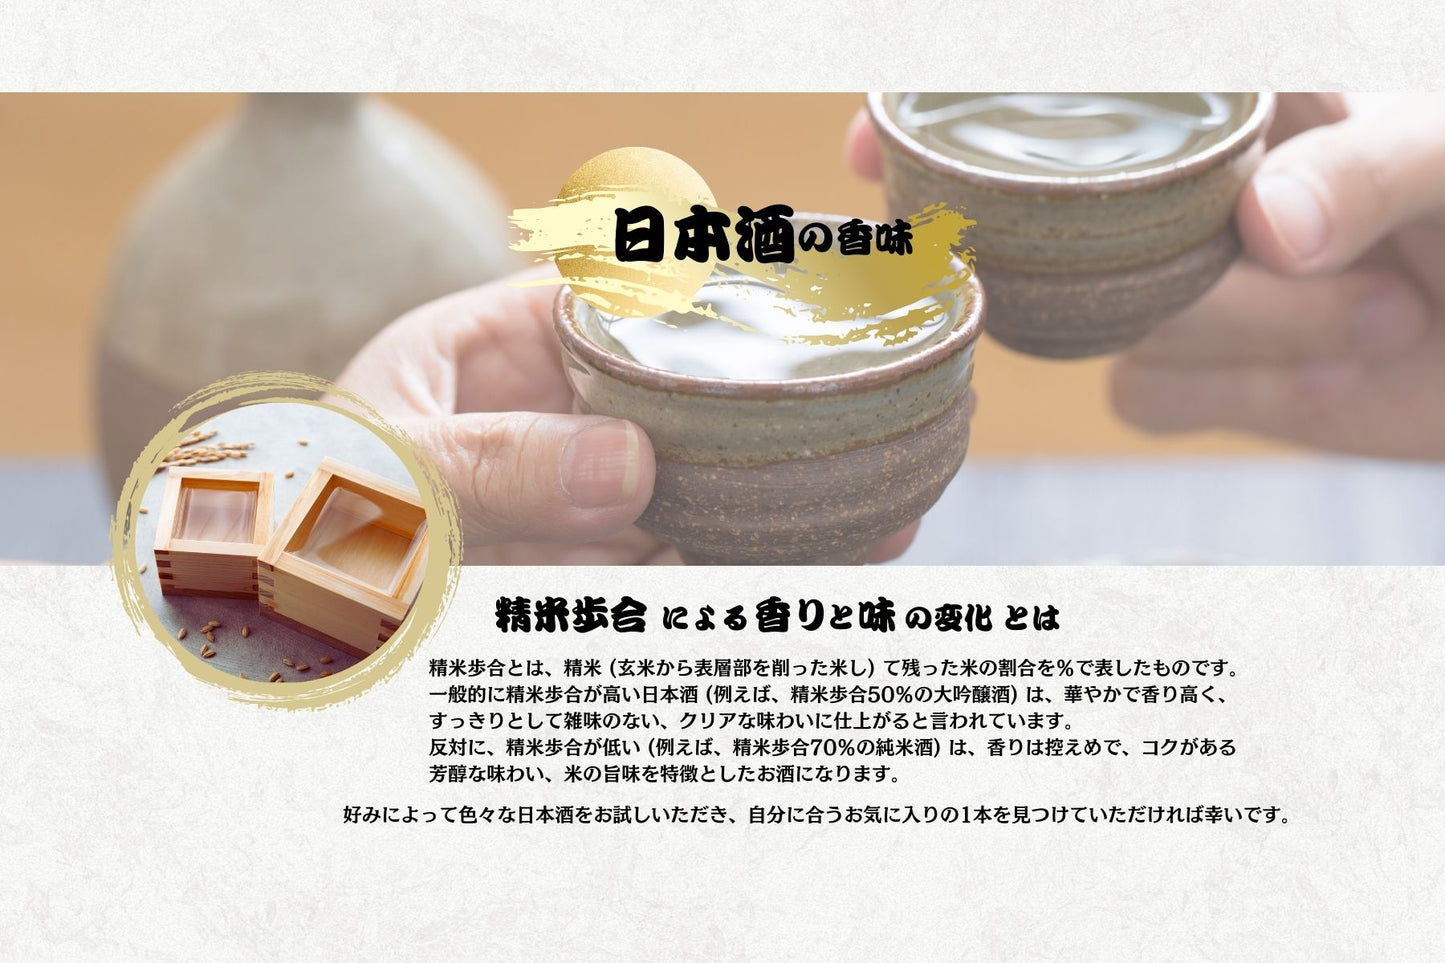 水藝特級純米酒 720ml (52009)